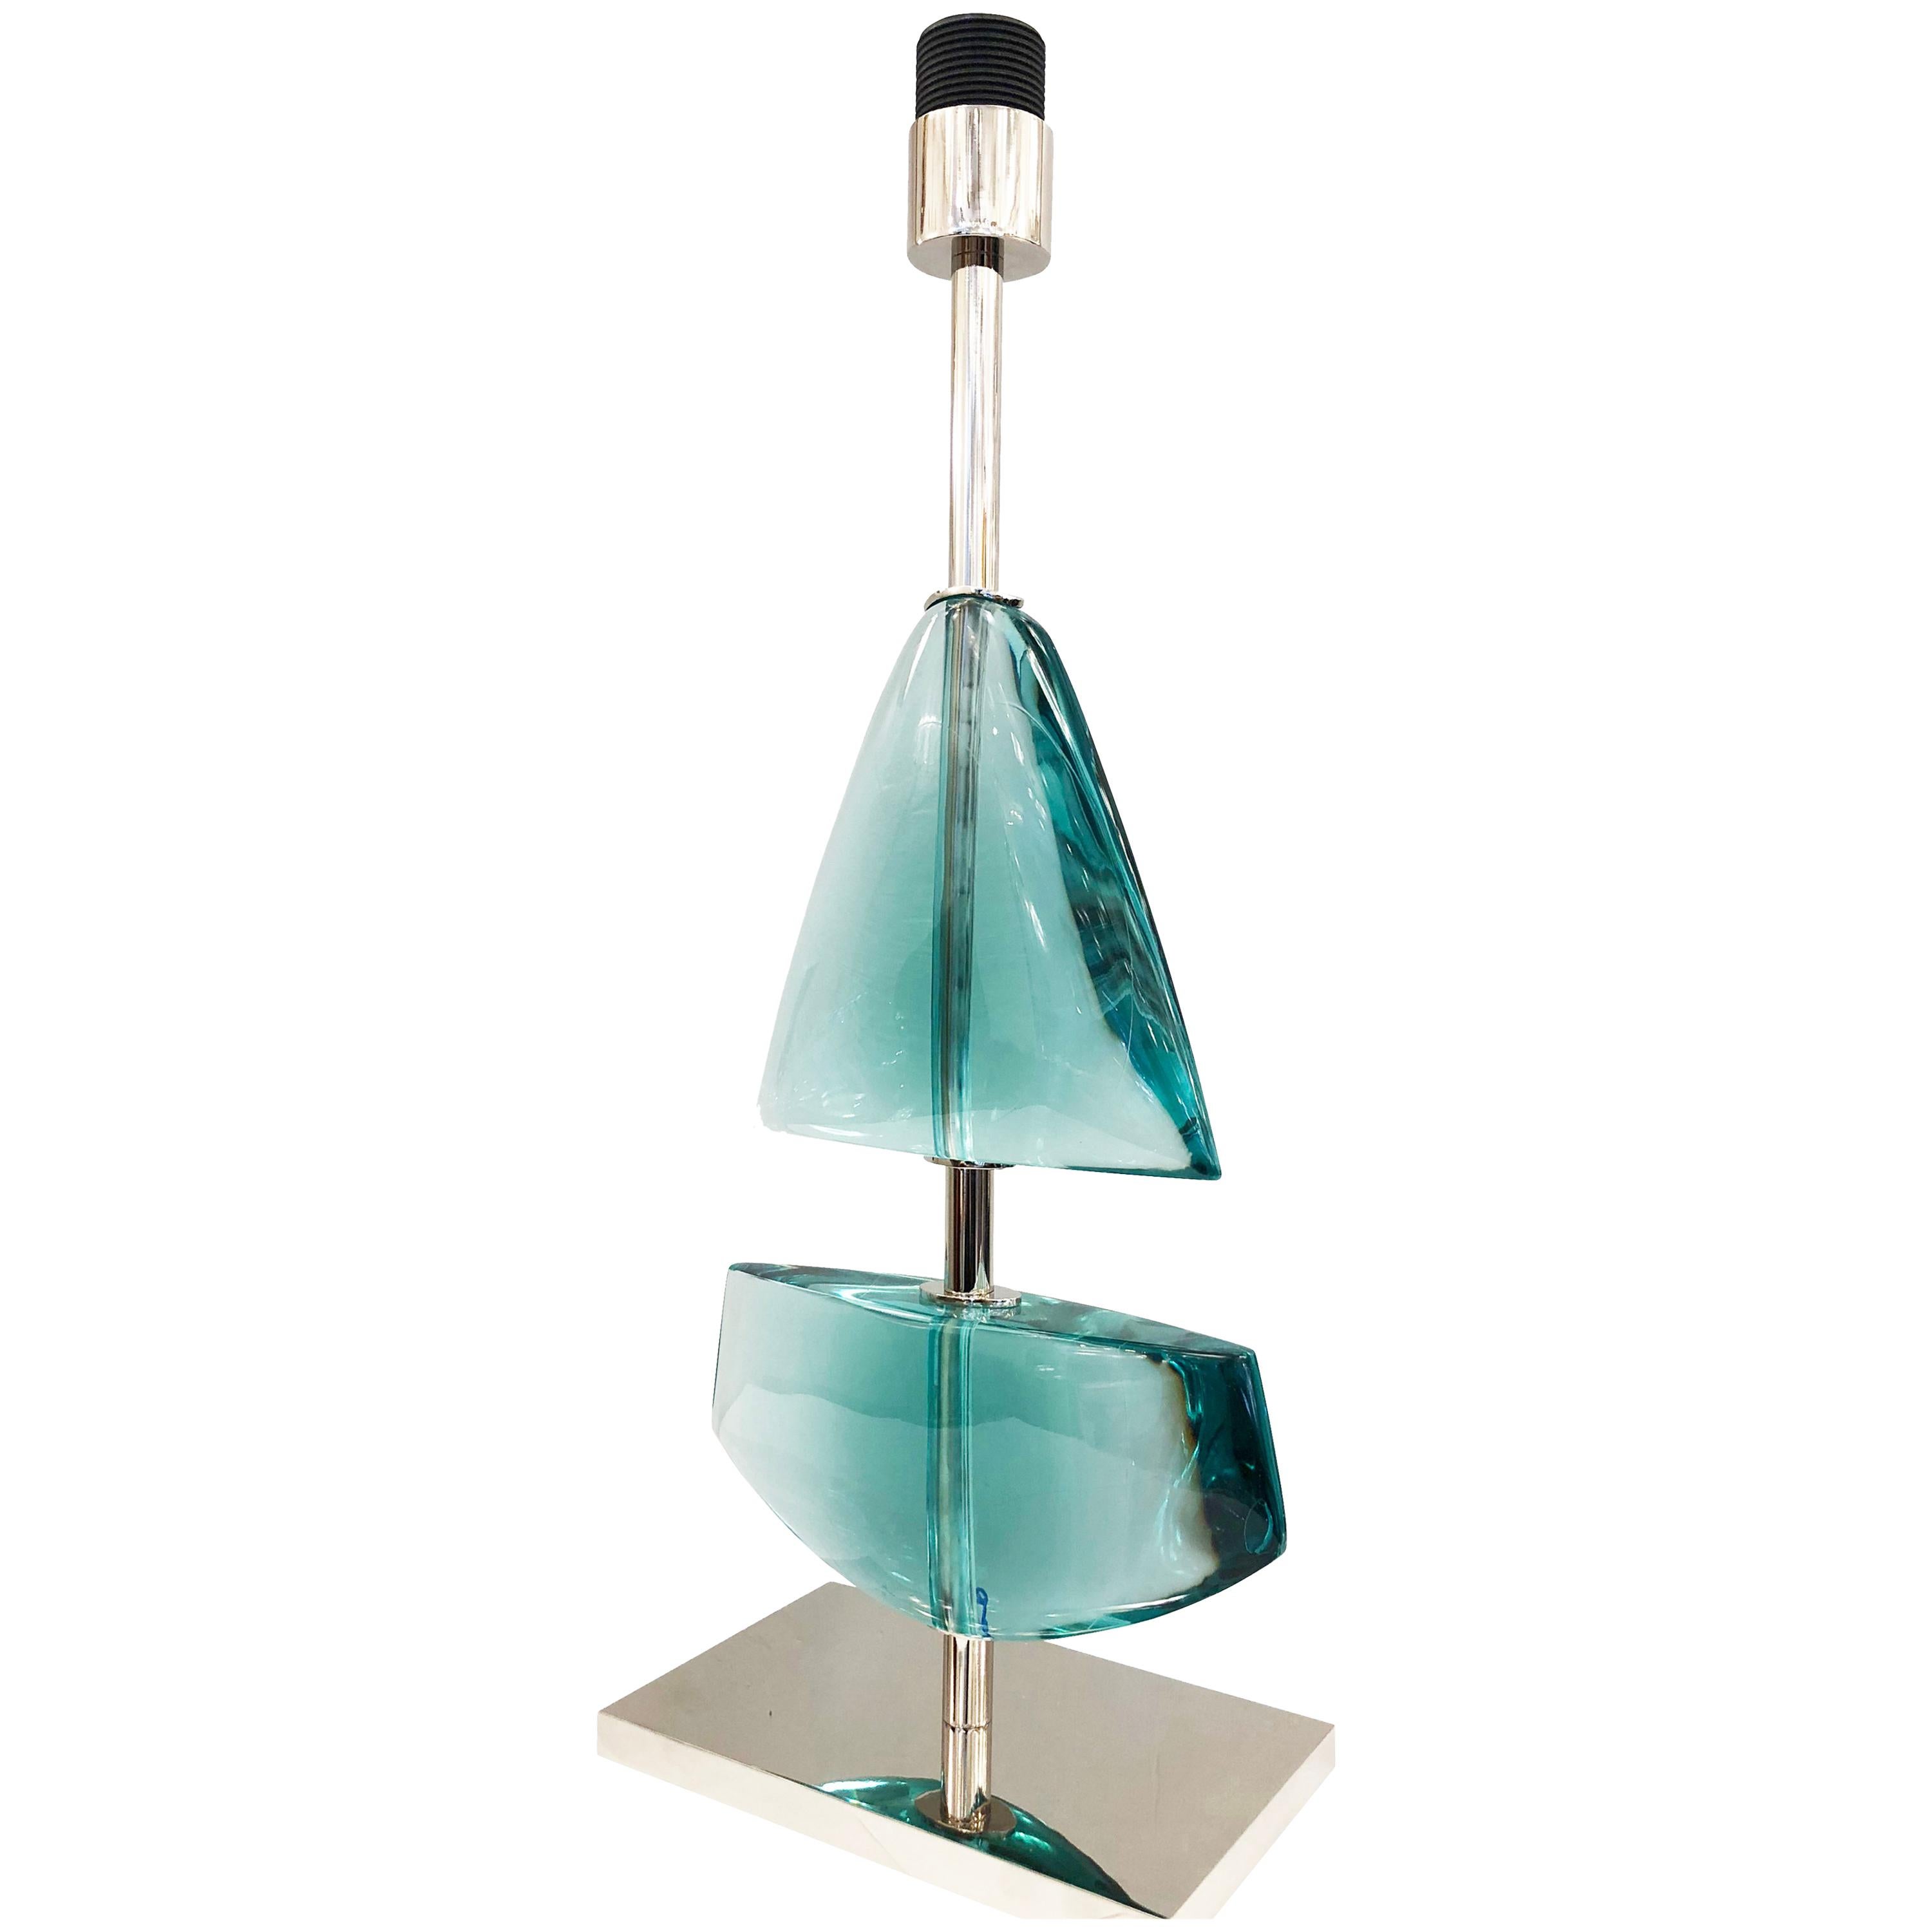 Tischleuchte aus Glas in limitierter Auflage, hergestellt vom Glaskünstler Effetto Vetro für Gaspare Asaros Studio-Linie formA. Jede Lampe ist in zwei Teilen handgeschnitzt, die an ein Segelboot erinnern. Erhältlich in sechs verschiedenen Farben.